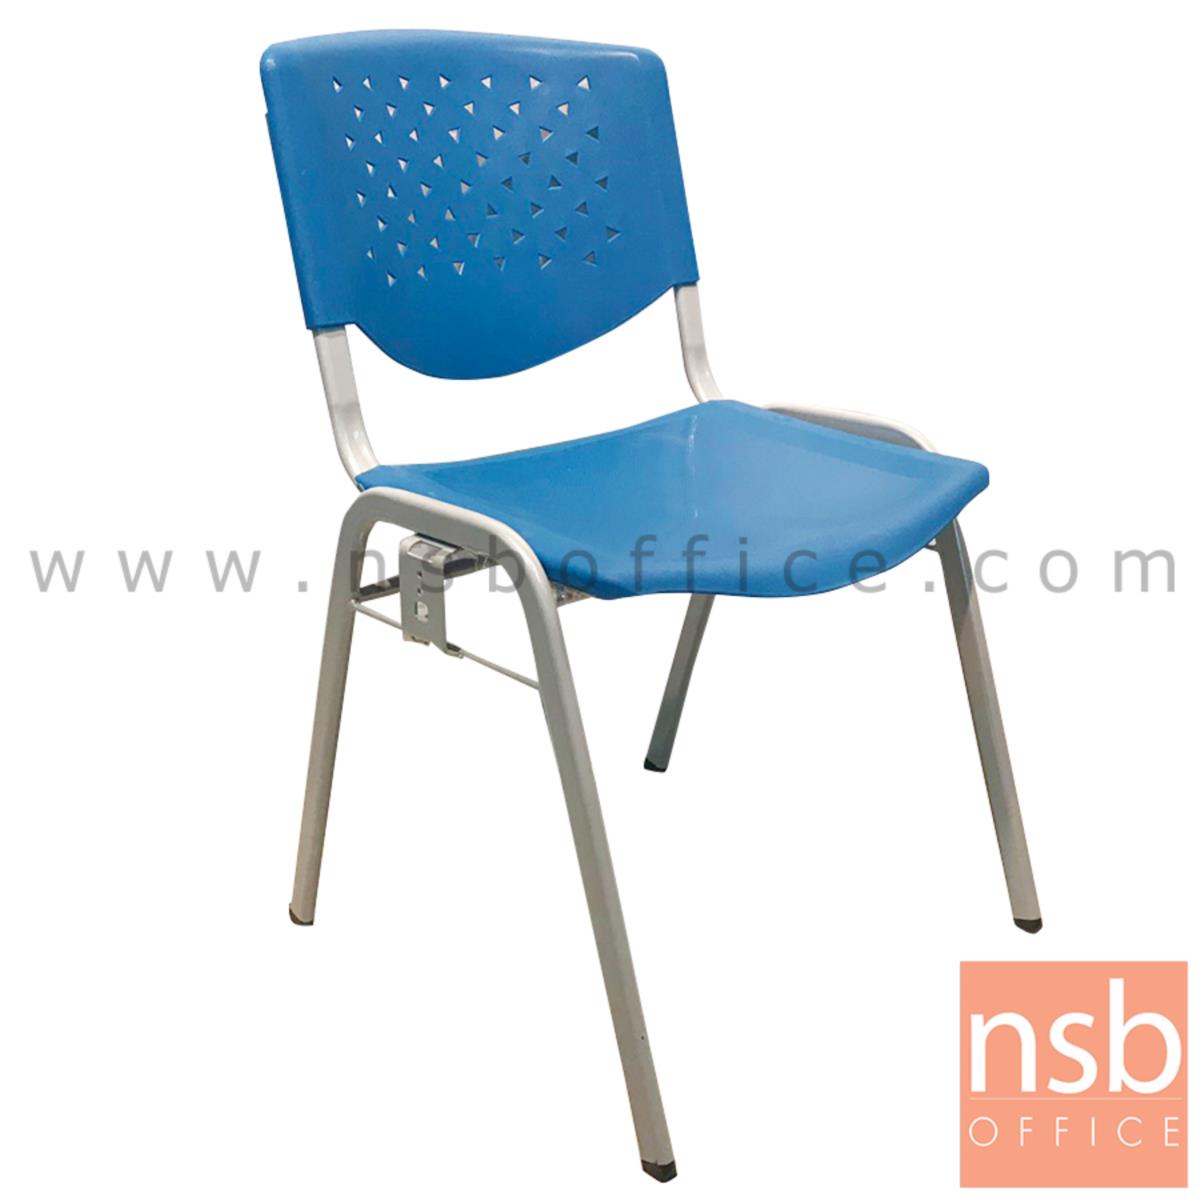 B05A174:เก้าอี้อเนกประสงค์เฟรมโพลี่ รุ่น KK-M017 ขาเหล็ก 